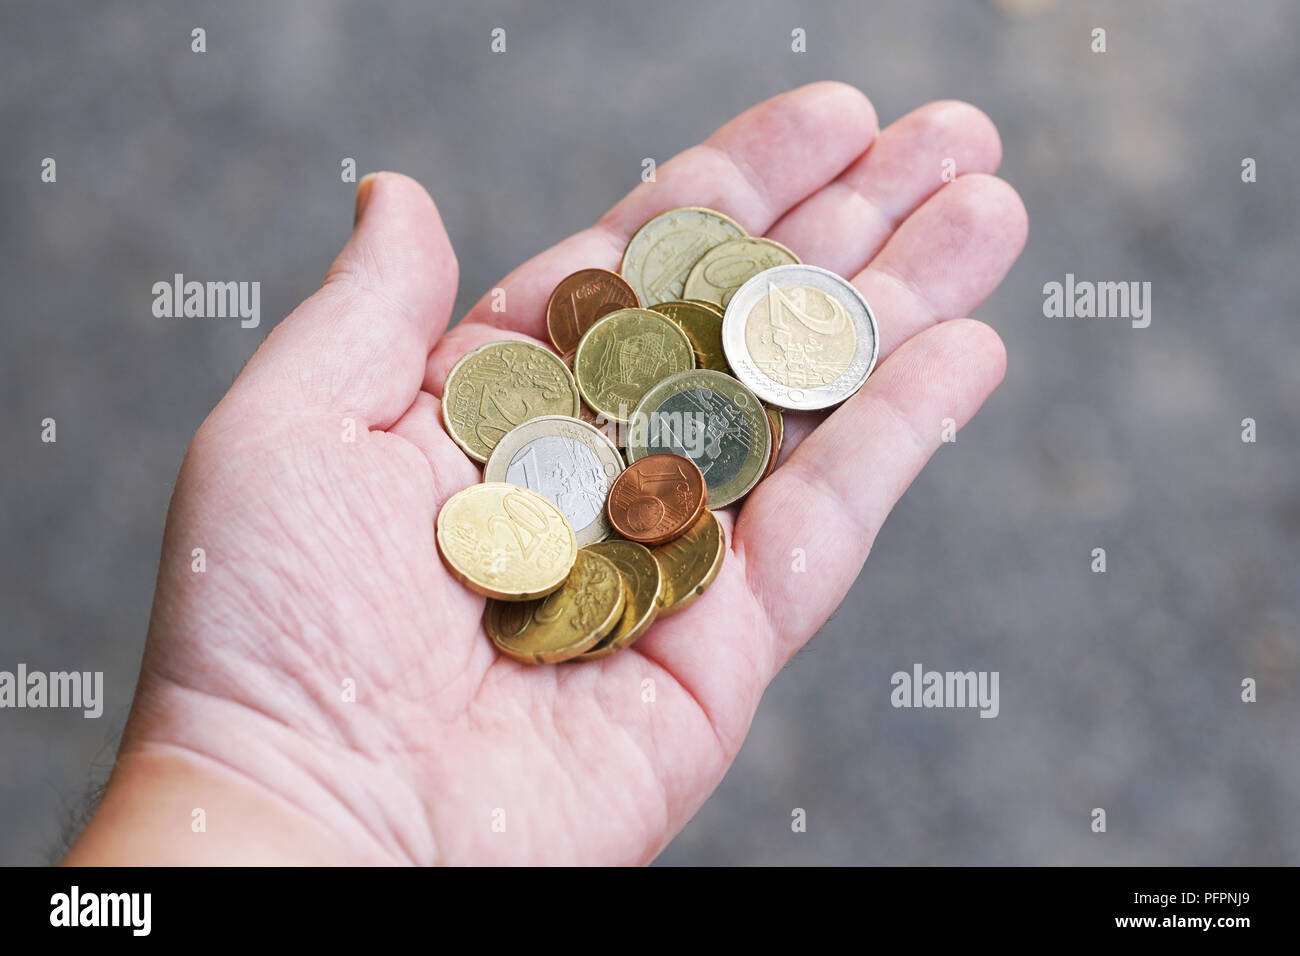 Handvoll kleiner lose Tasche änderung Euro Cent Münzen in der Handfläche, Geld Finanzen Währung Konzept Stockfoto